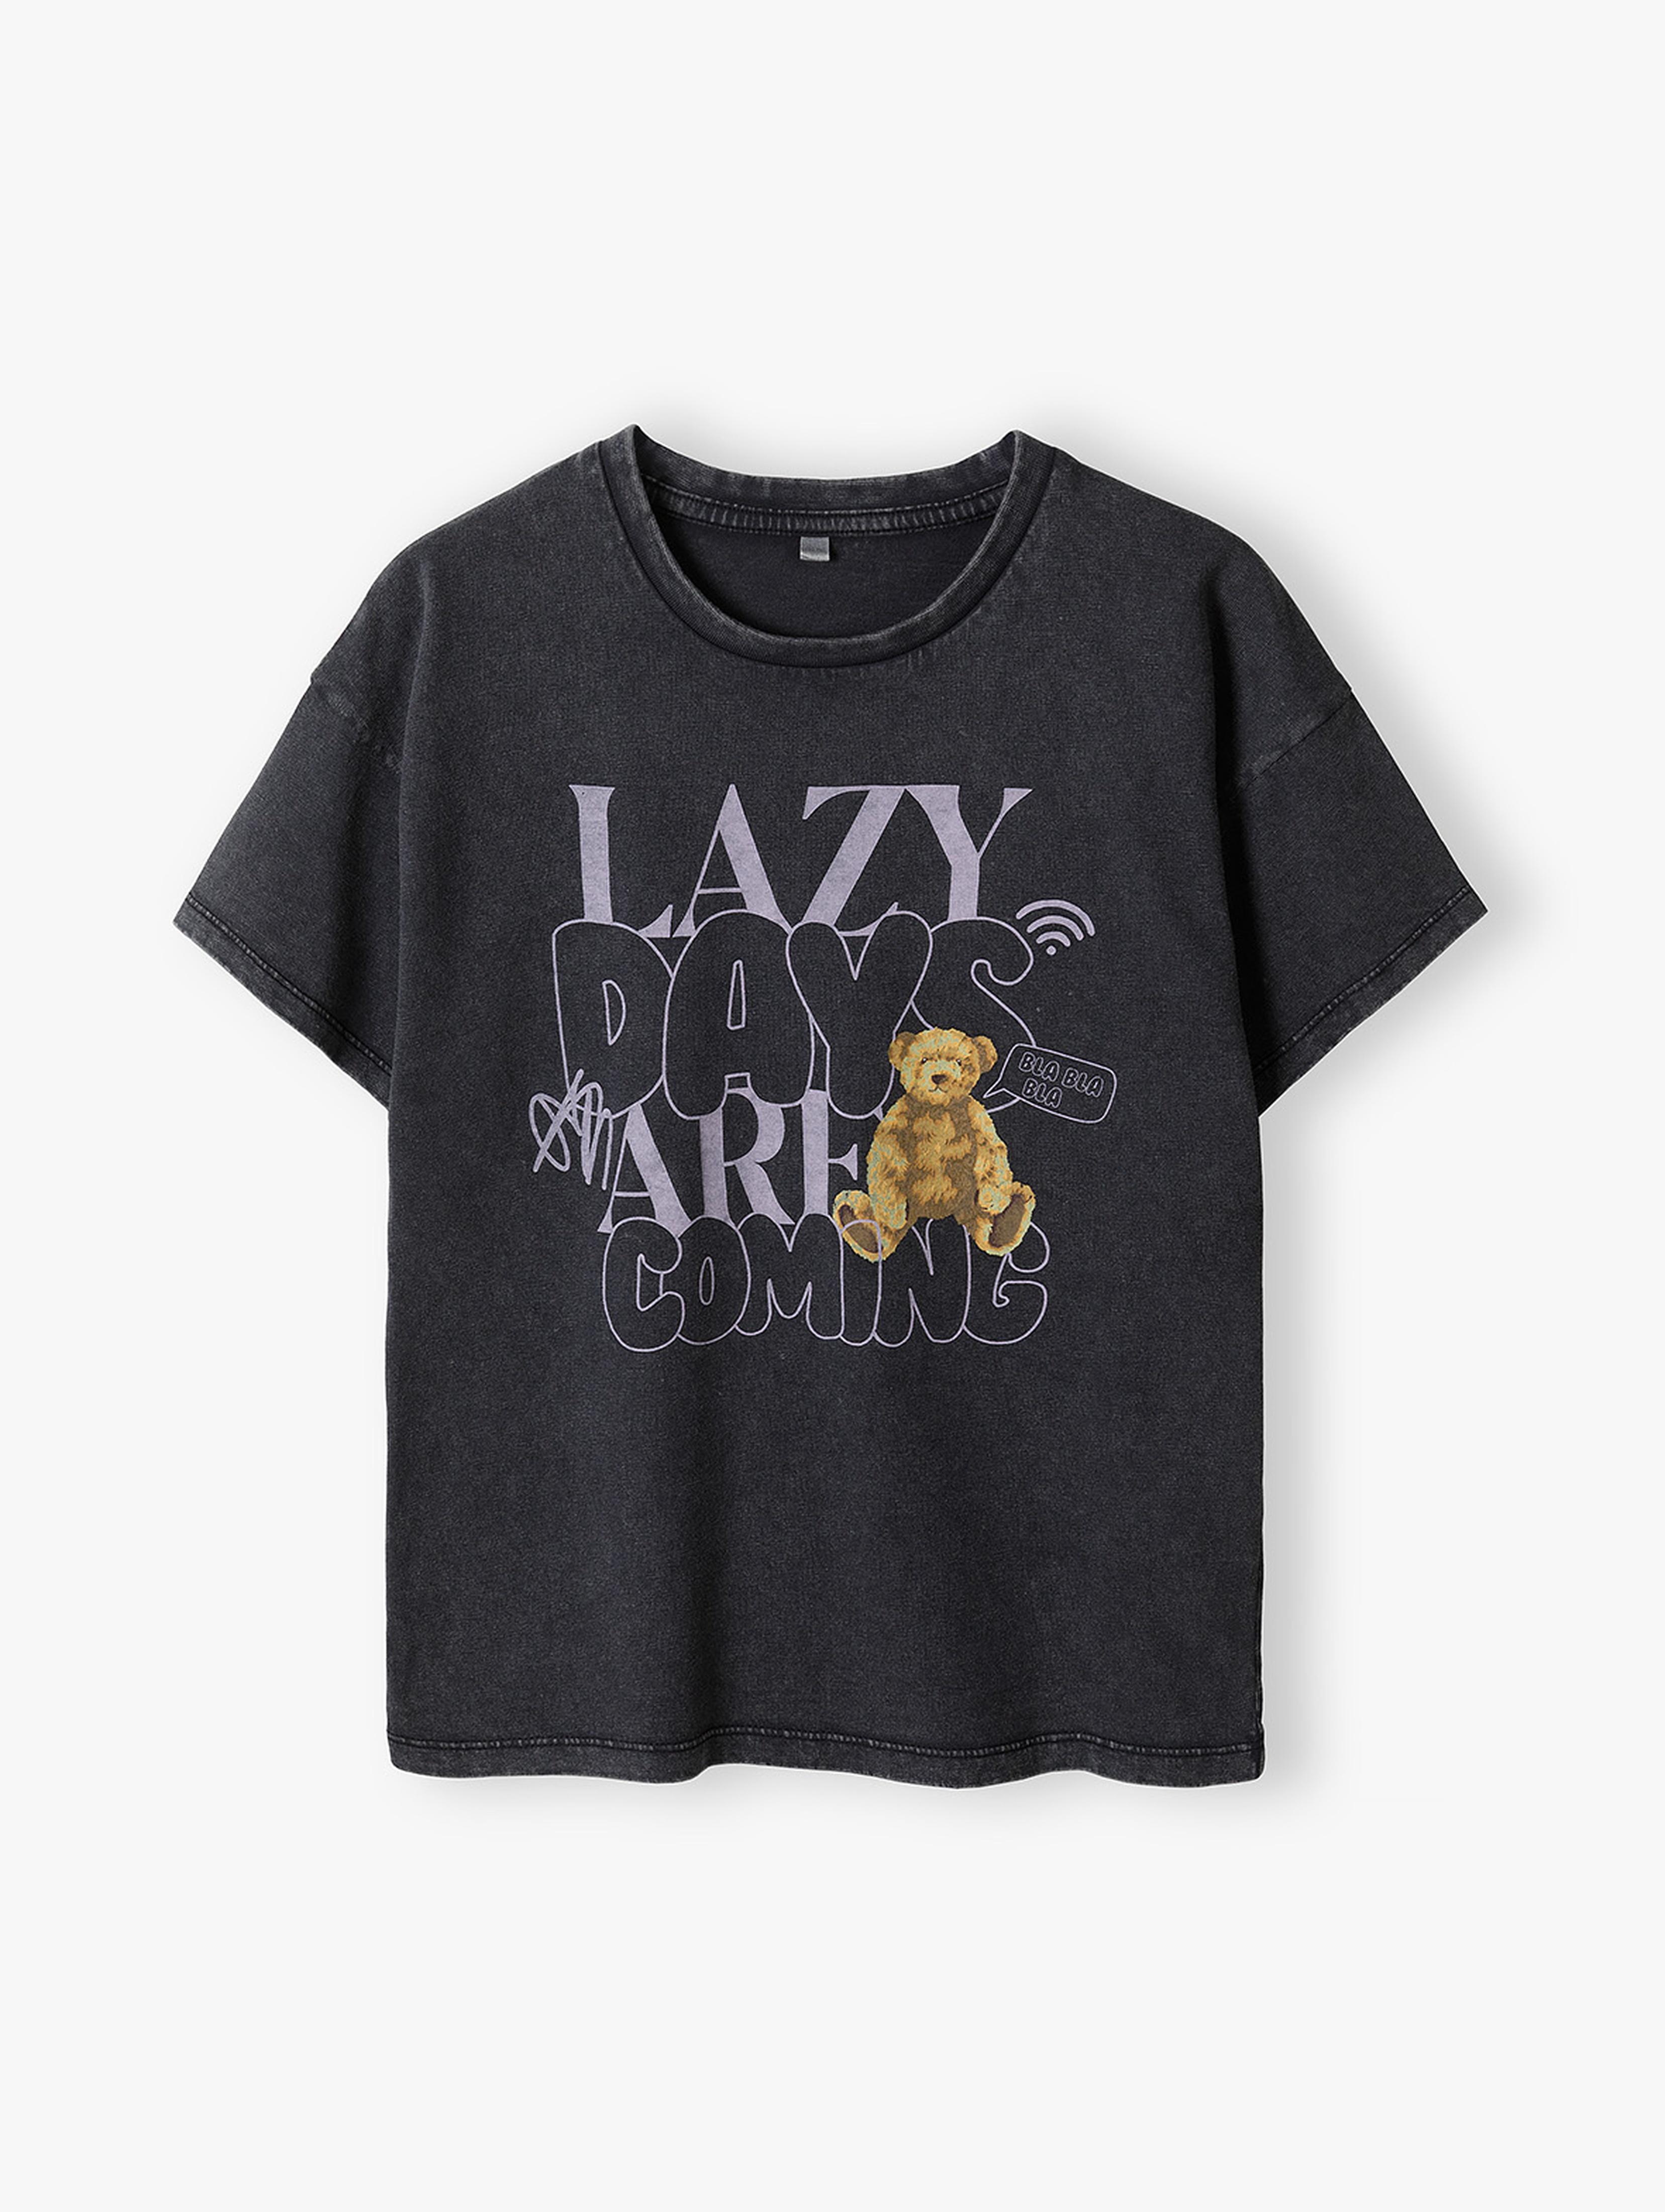 T-shirt dziewczęce grafitowy - Lazy Days - Lincoln&Sharks